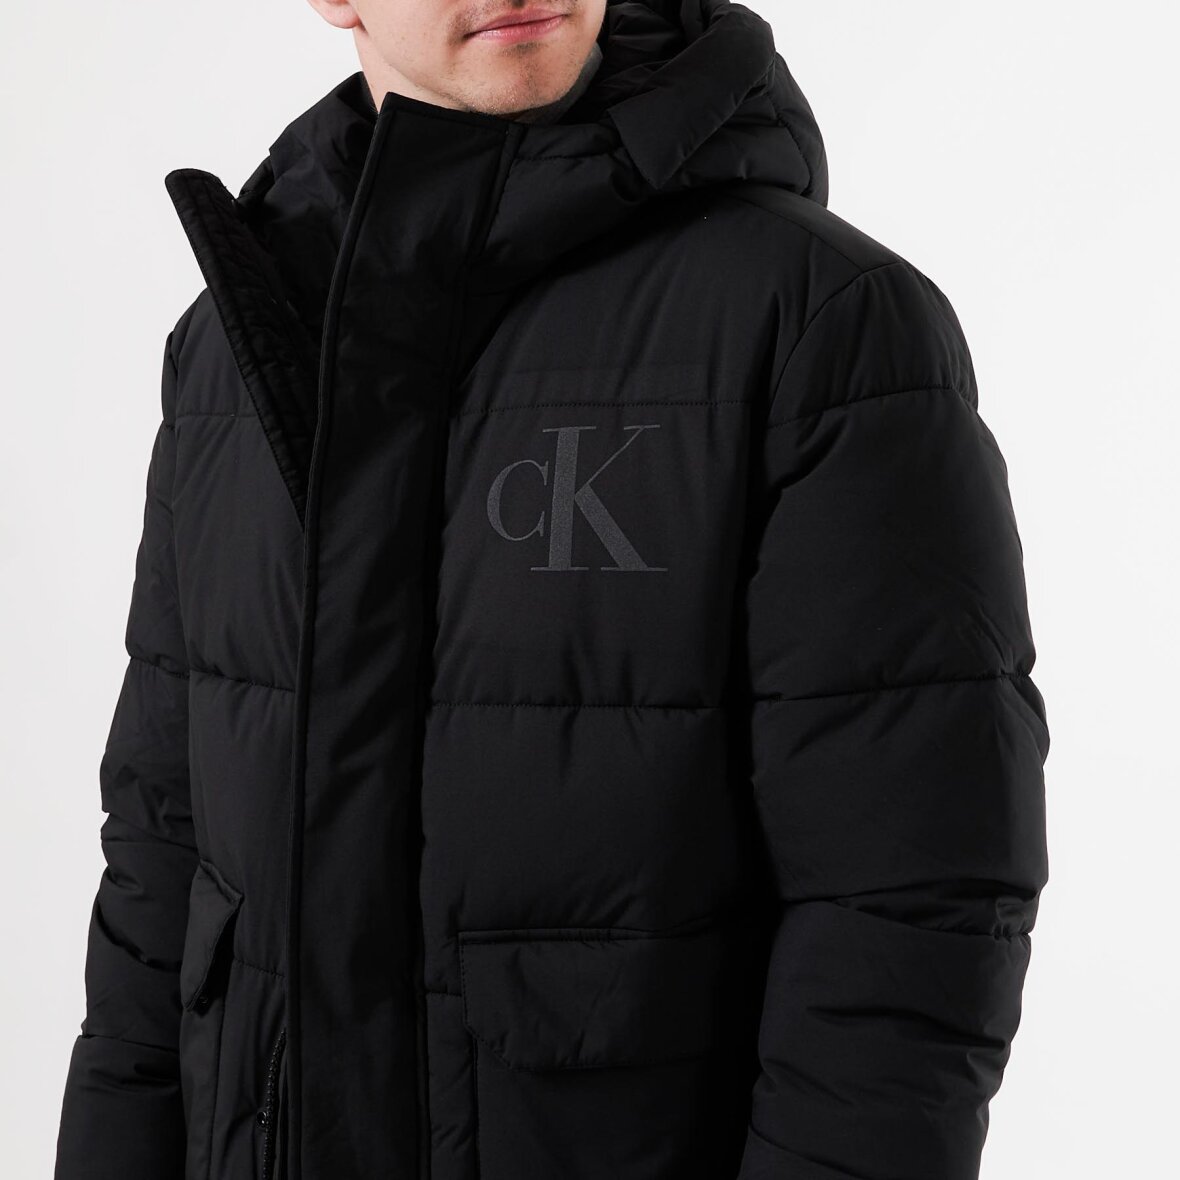 tvetydig Smadre Ekspression Ck eco jacket fra Calvin Klein - Køb nu, leveret i morgen!